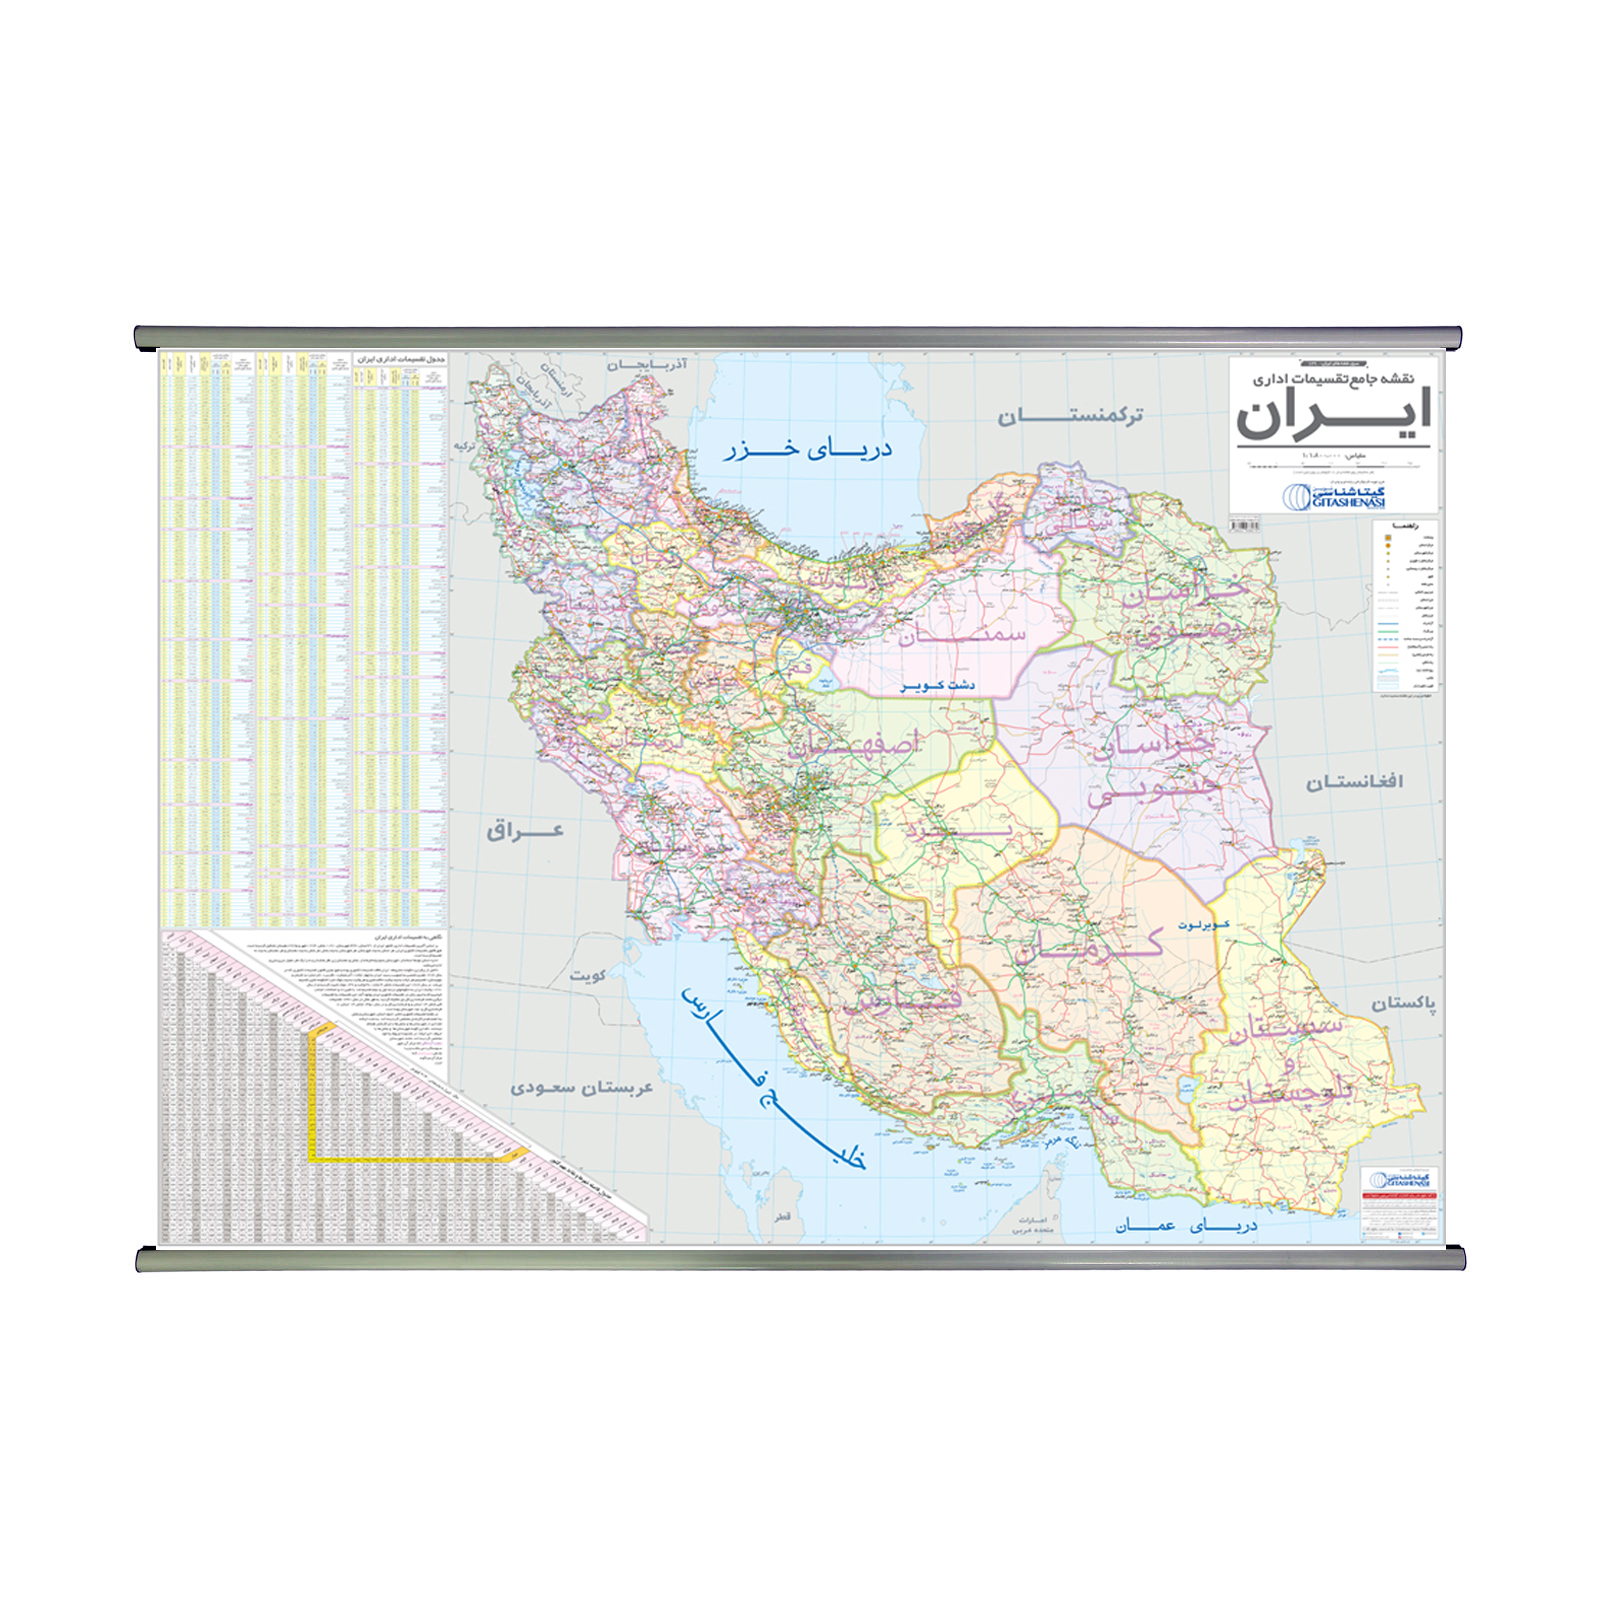 نقشه جامع تقسیمات اداری ایران گیتاشناسی نوین کد L1290